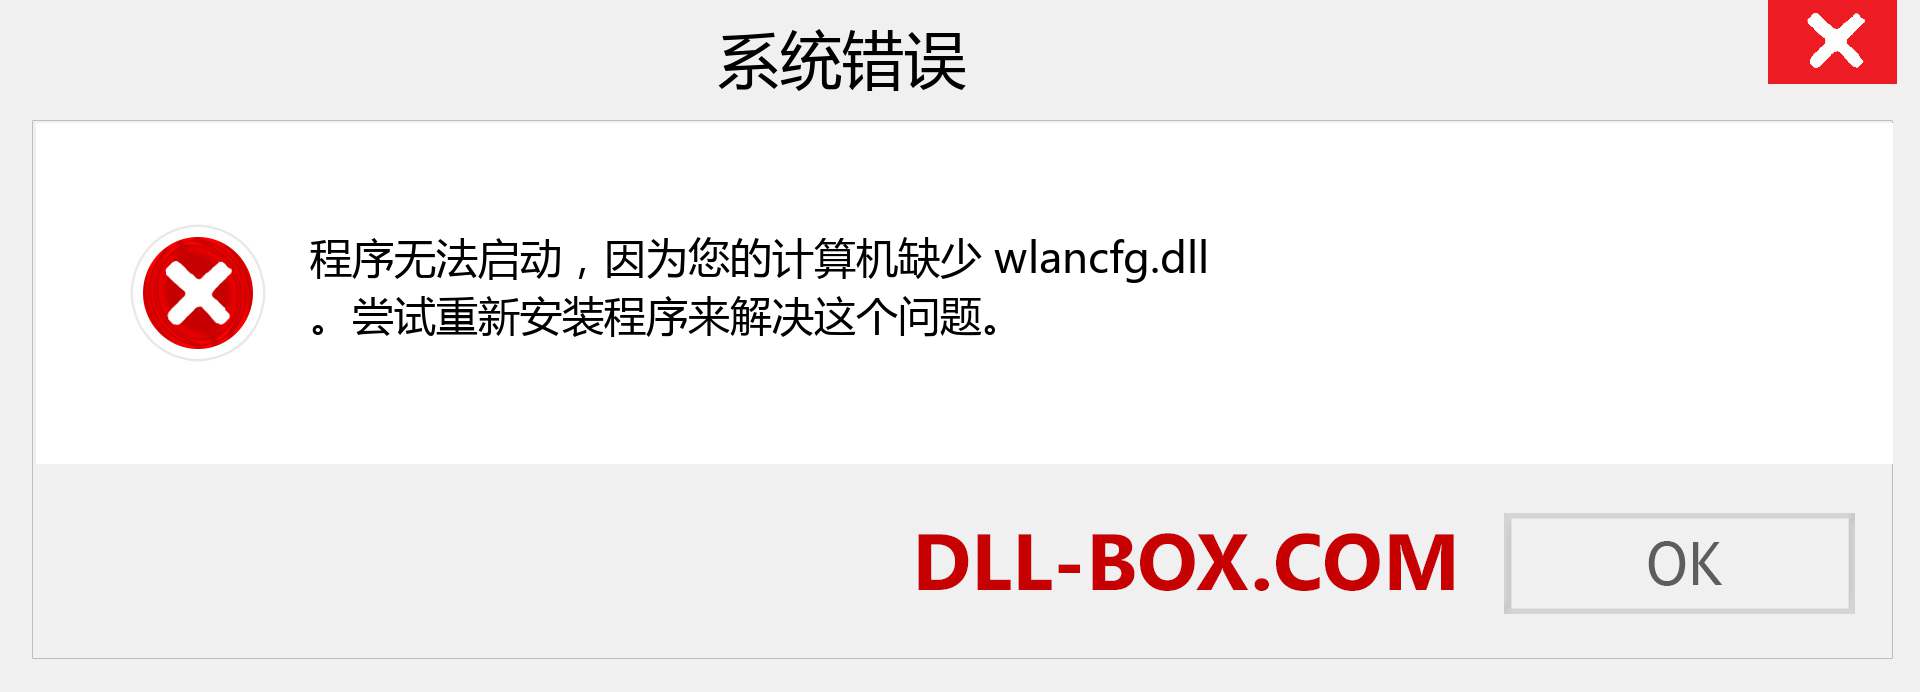 wlancfg.dll 文件丢失？。 适用于 Windows 7、8、10 的下载 - 修复 Windows、照片、图像上的 wlancfg dll 丢失错误